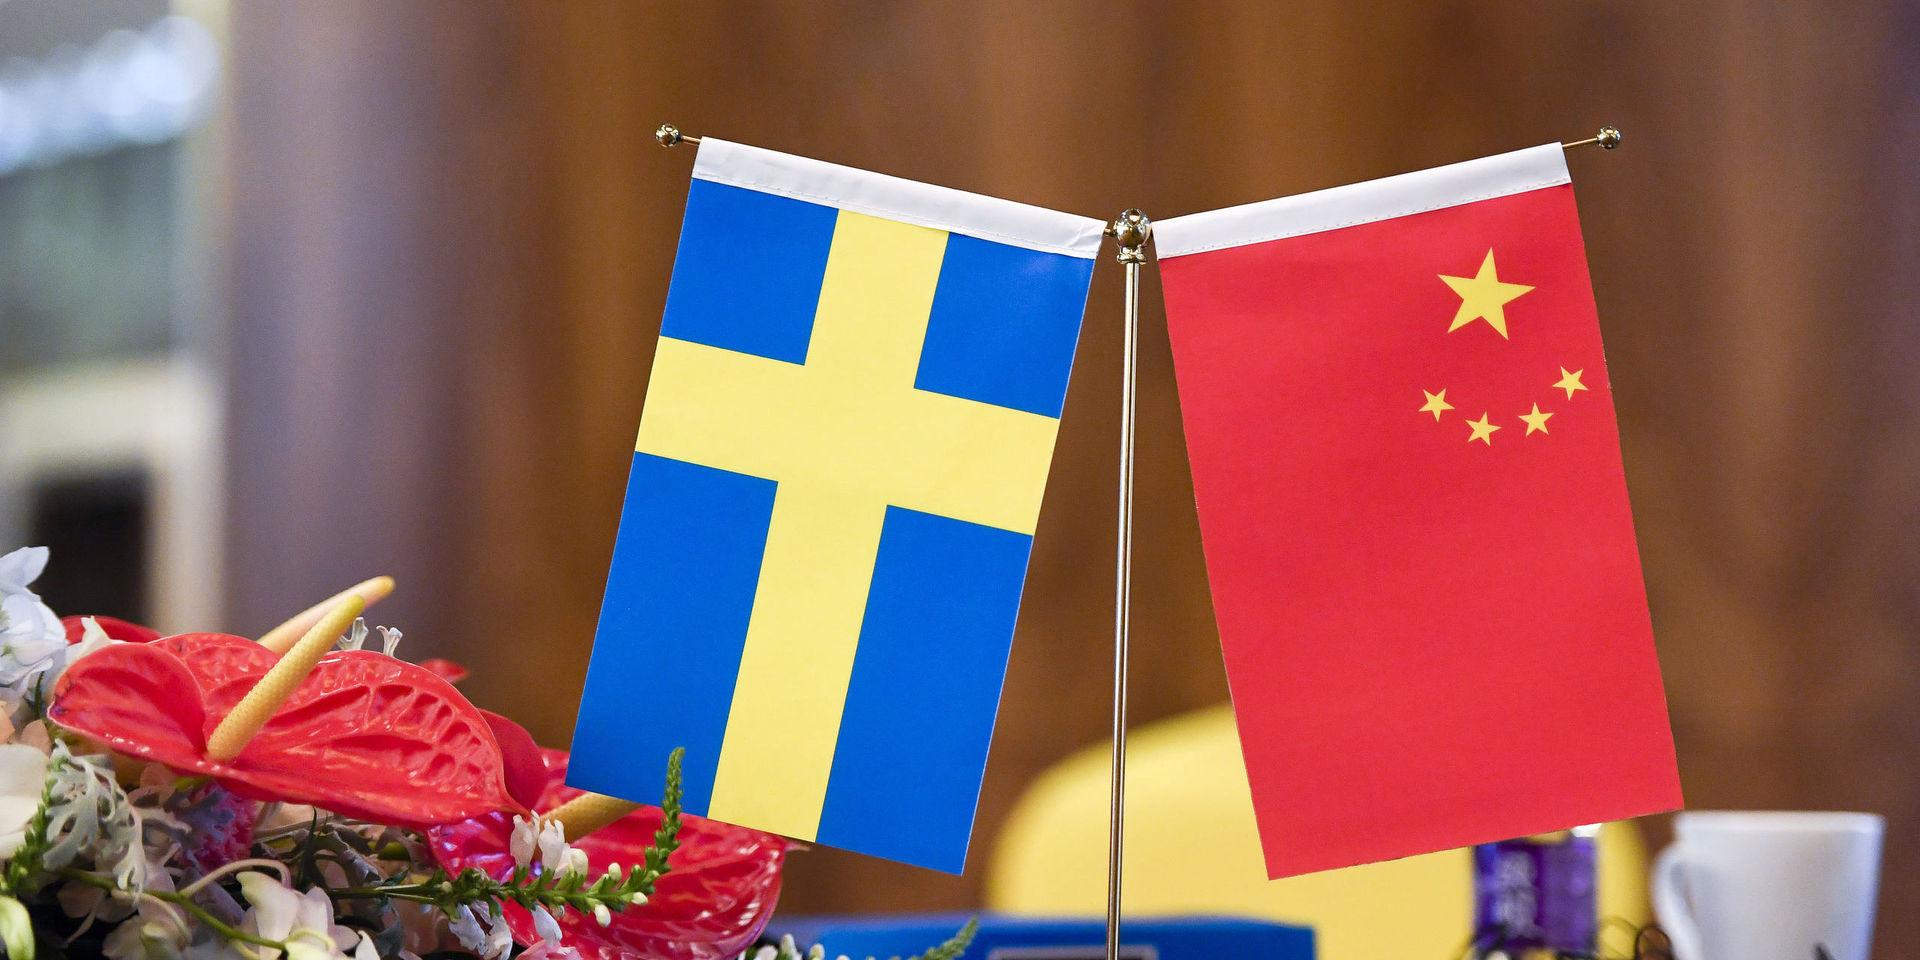 Kina och Sverige kommer att inte att mötas som det var tänkt nästa vecka, efter Kinas kritik mot svenska prisutdelningen till Gui Minhai ställer Kina in ett handelsmöte.